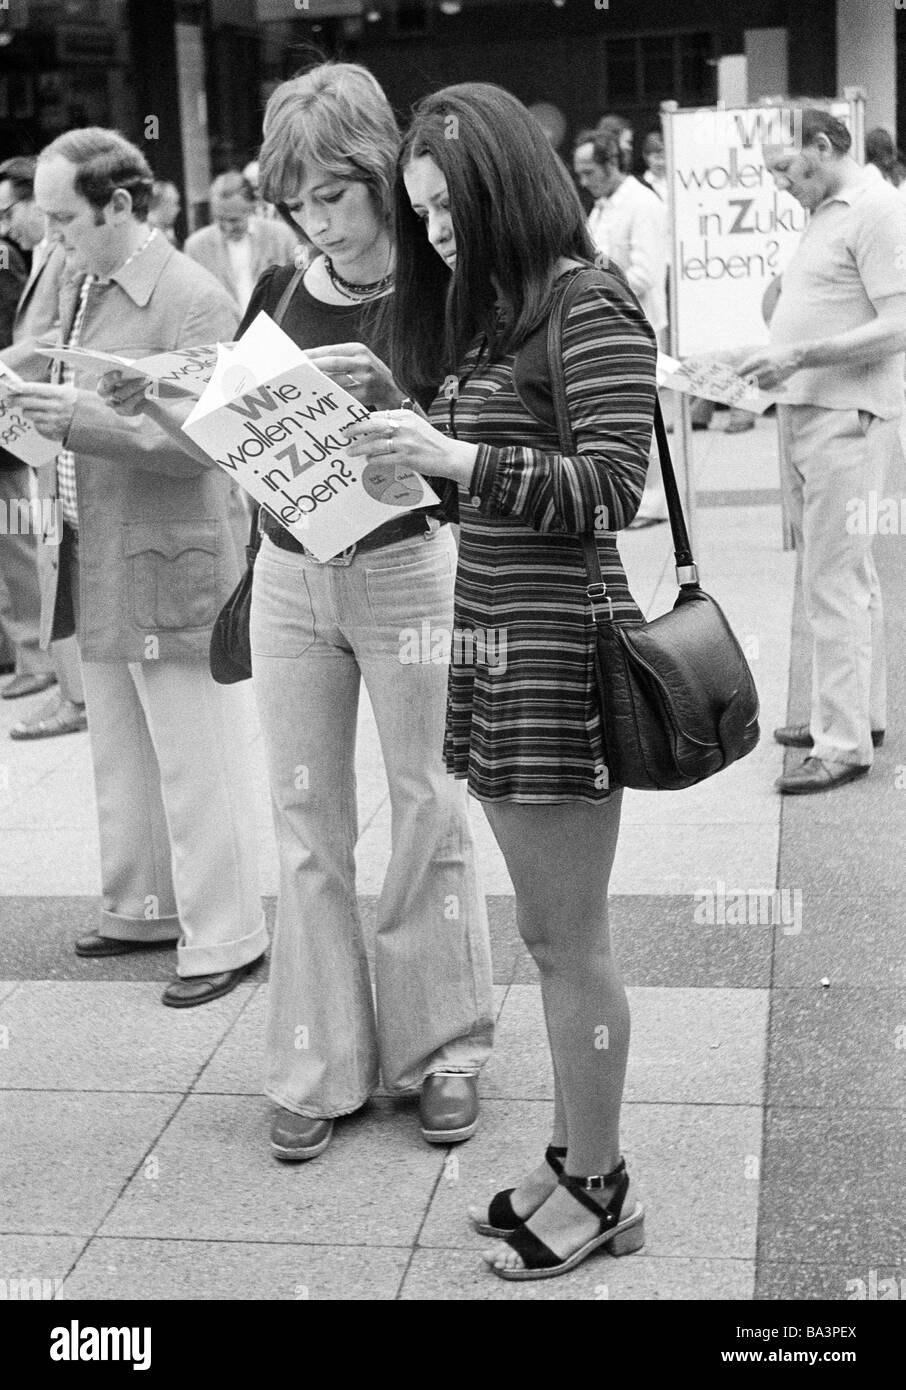 Negli anni settanta, foto in bianco e nero, persone, due giovani ragazze stand su di una piazza la lettura di un volantino, 'Come vogliamo vivere nel futuro", propaganda elettorale, minigonna, teeshirt, Jeans Pantaloni, di età compresa tra i 20 e i 25 anni Foto Stock